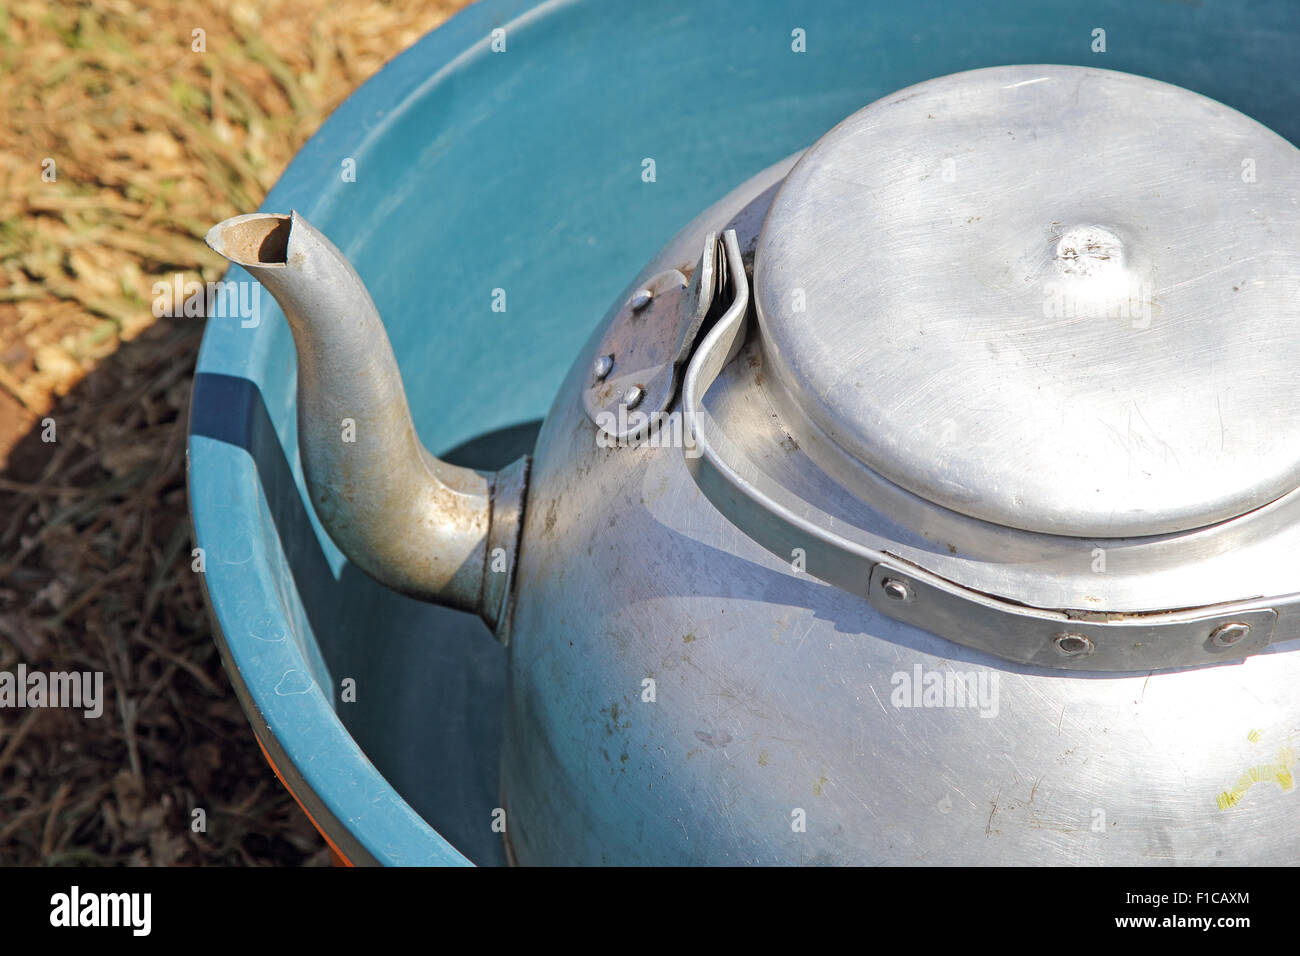 Un vieux fer à repasser électrique à l'intérieur d'un bassin bleu en plastique, d'un simple et efficace des équipements de camping pour les tâches quotidiennes comme la cuisine et a été Banque D'Images